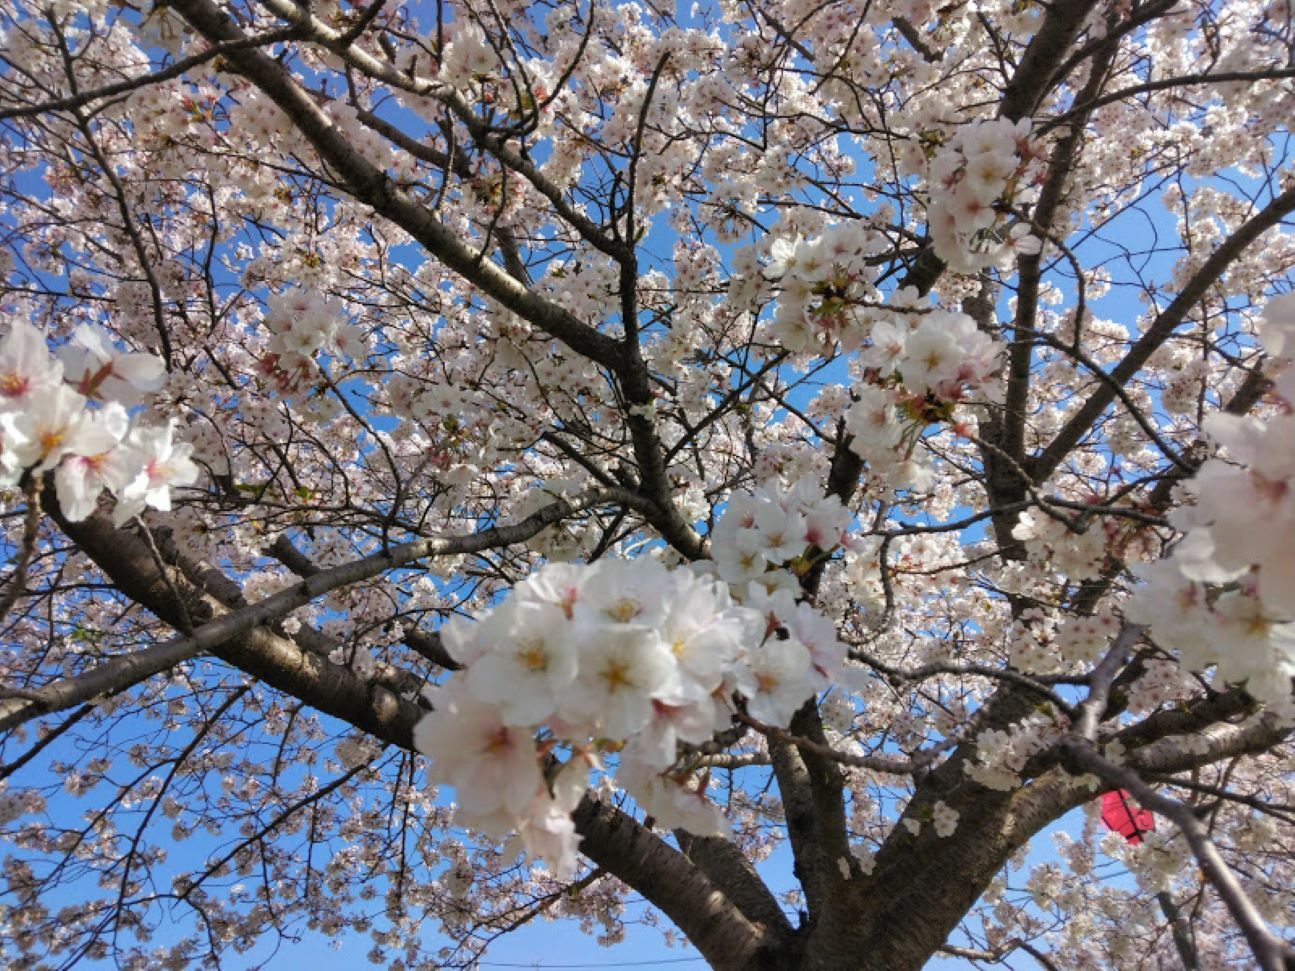 ひょうたん池の桜